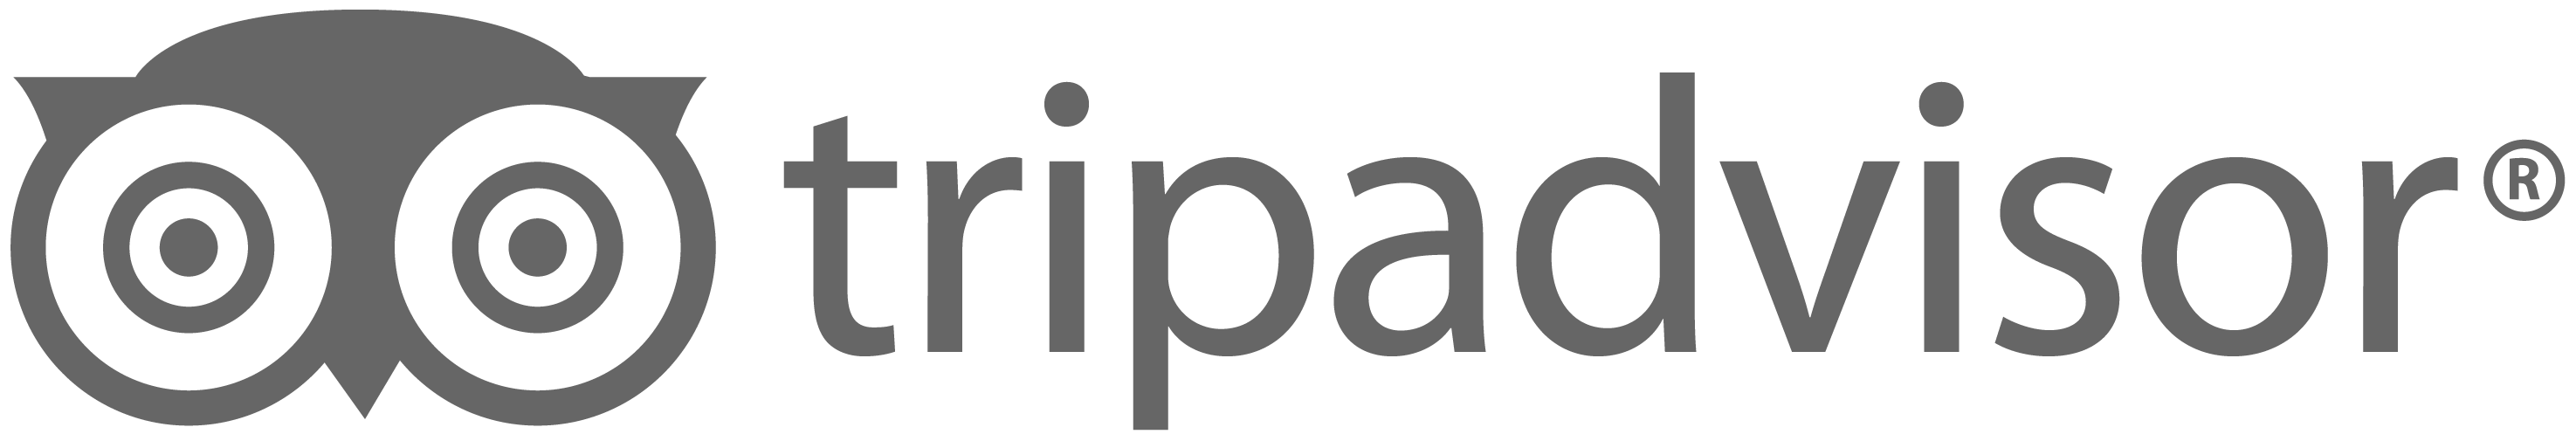 TripAdvisor-logo-el-arponero